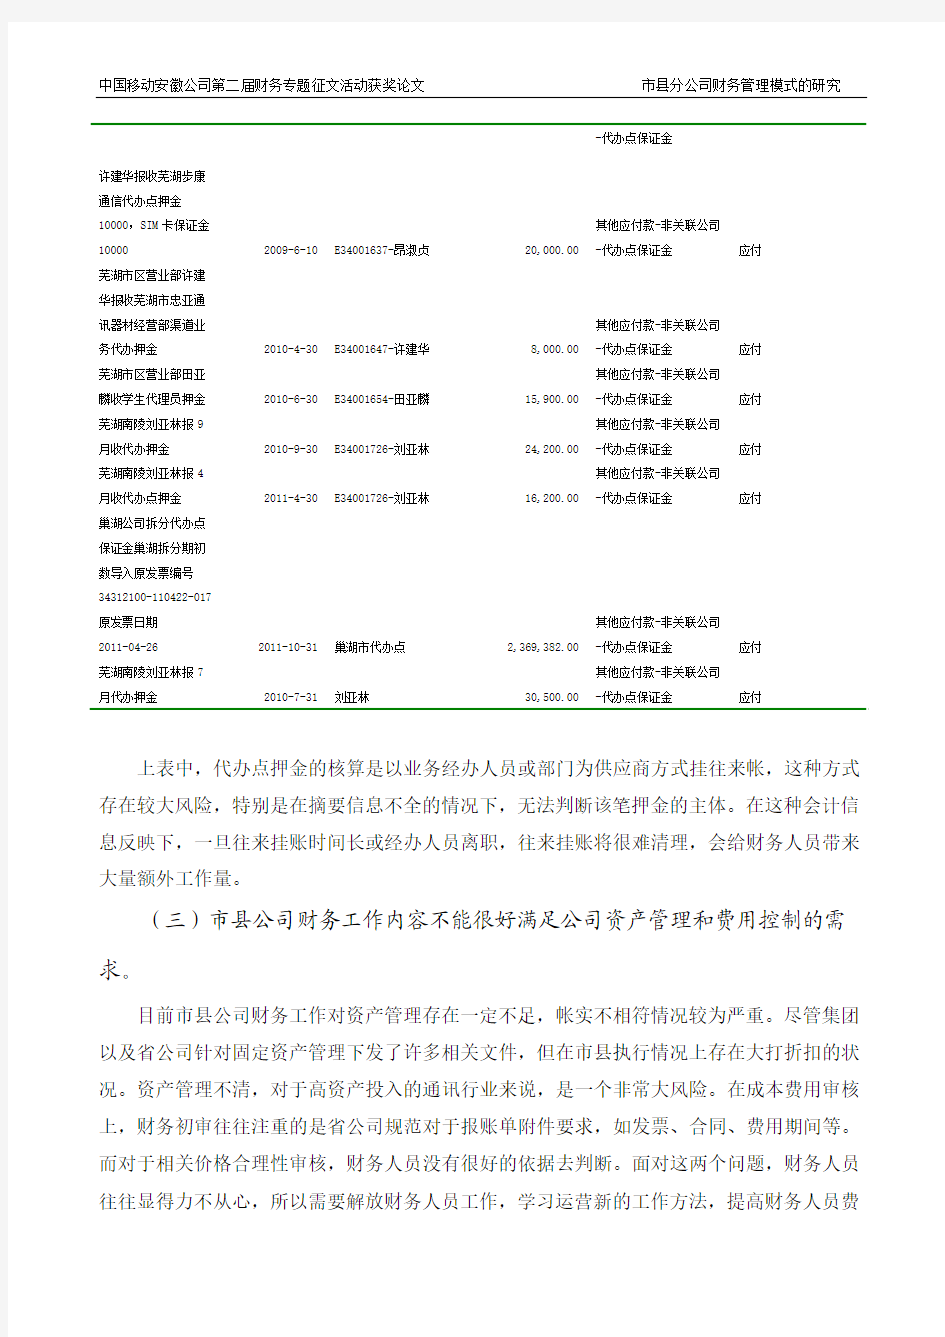 18-市县分公司财务管理模式的研究(芜湖分公司,作者马青)